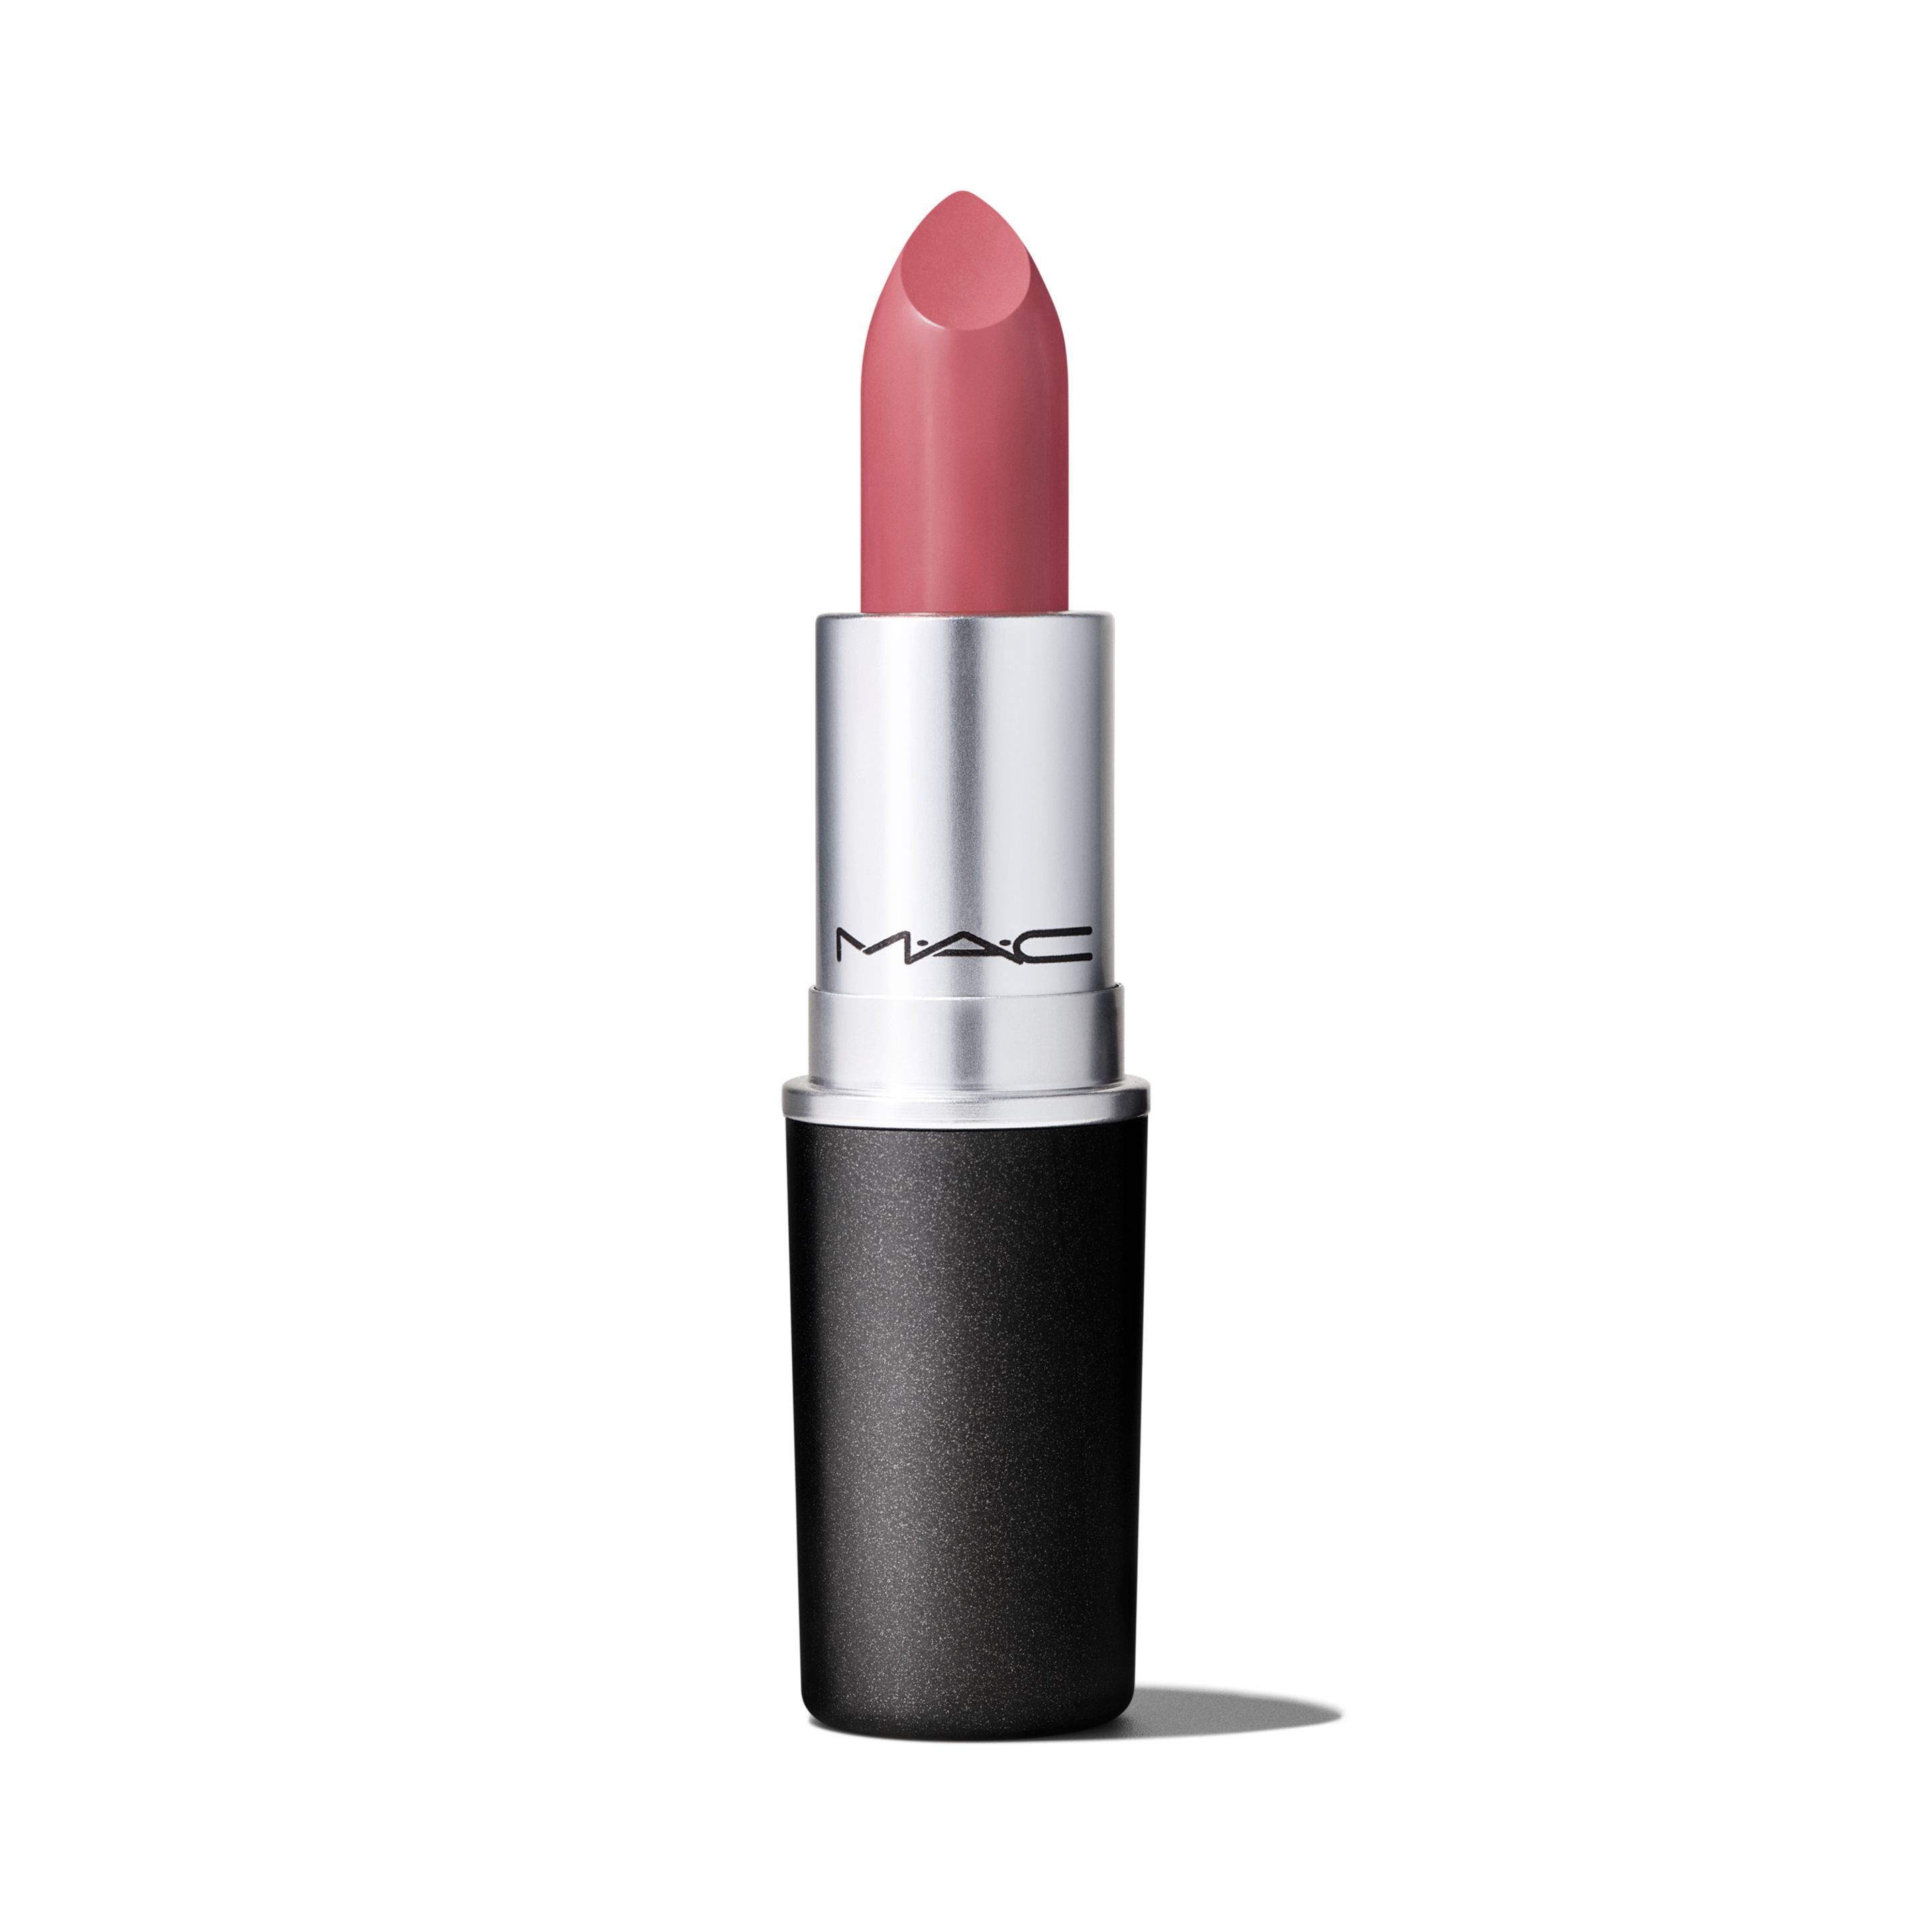 Помада для губ MAC Cosmetics Satin Lipstick кремовая, тон Twig, 3 г губная помада с атласным эффектом 732 grenadine clarins joli rouge satin lipstick